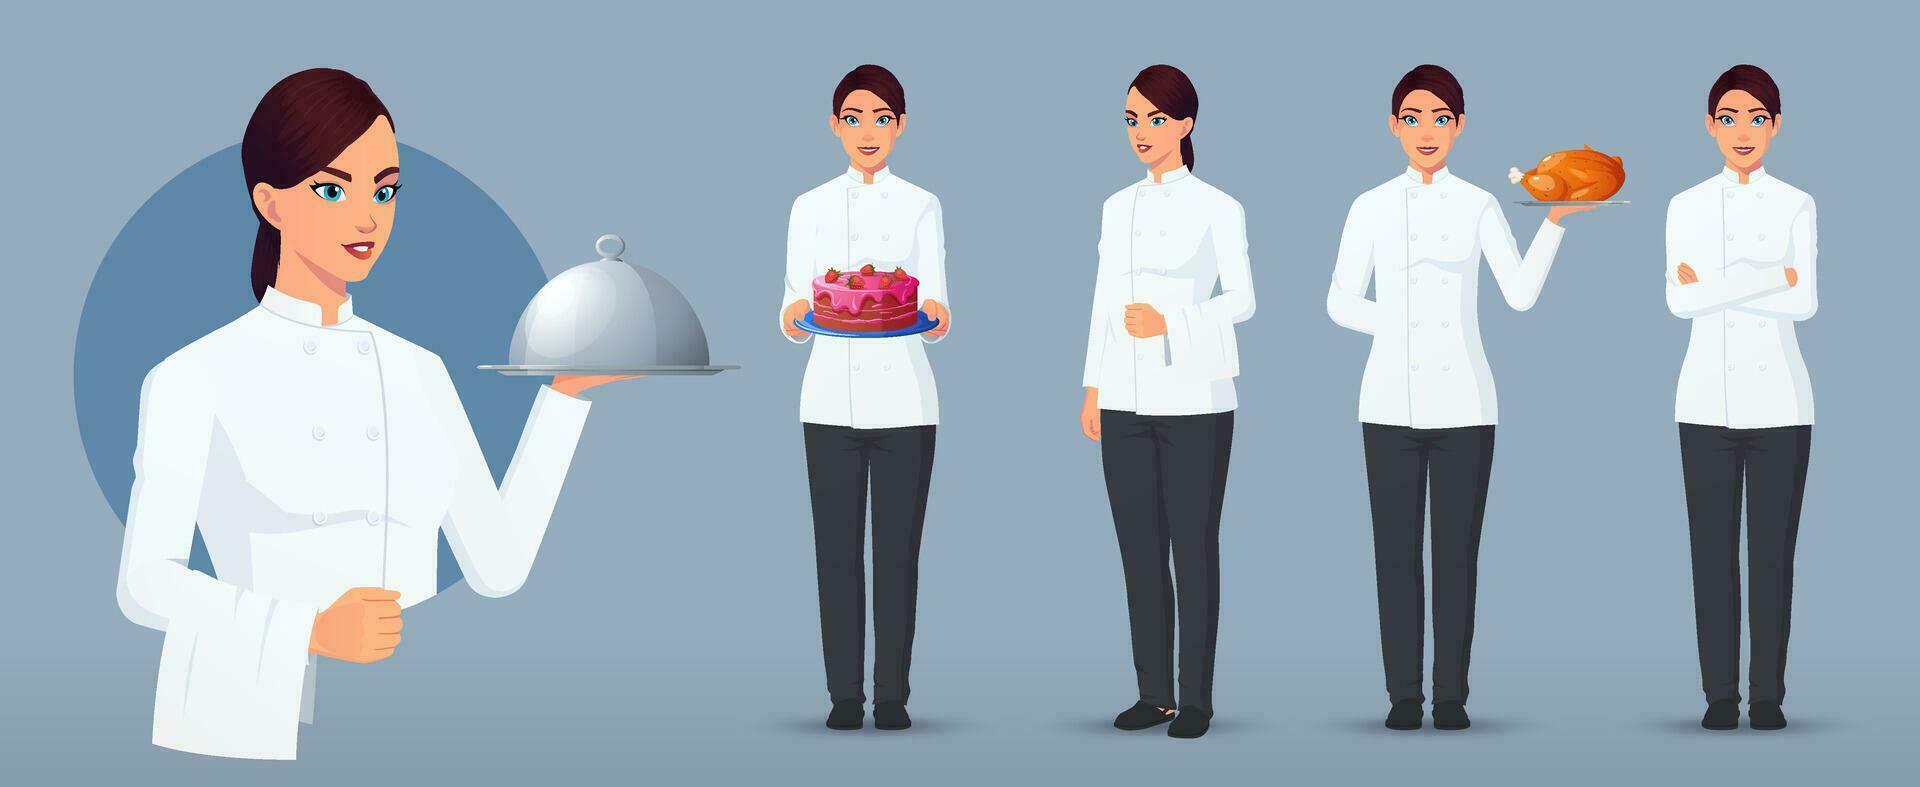 vrouw koken karakter reeks in divers poses en gebaren, chef logo, chef staand draag- taart, pizza, portie bord, armen gevouwen vector het dossier